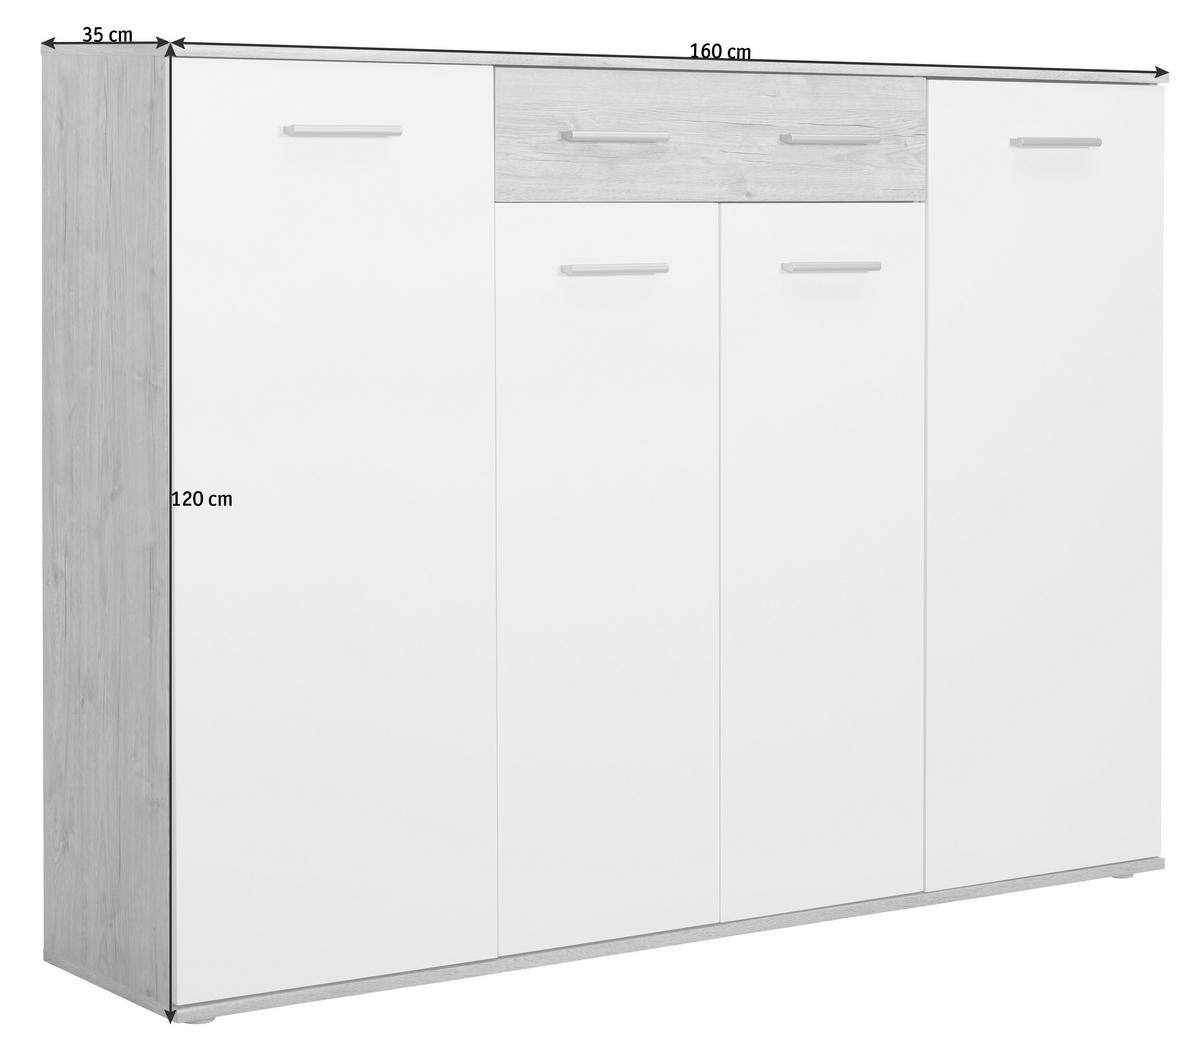 SCHUHSCHRANK Weiß, Eichefarben  - Eichefarben/Silberfarben, Design, Holzwerkstoff/Kunststoff (160/120/35cm) - Xora